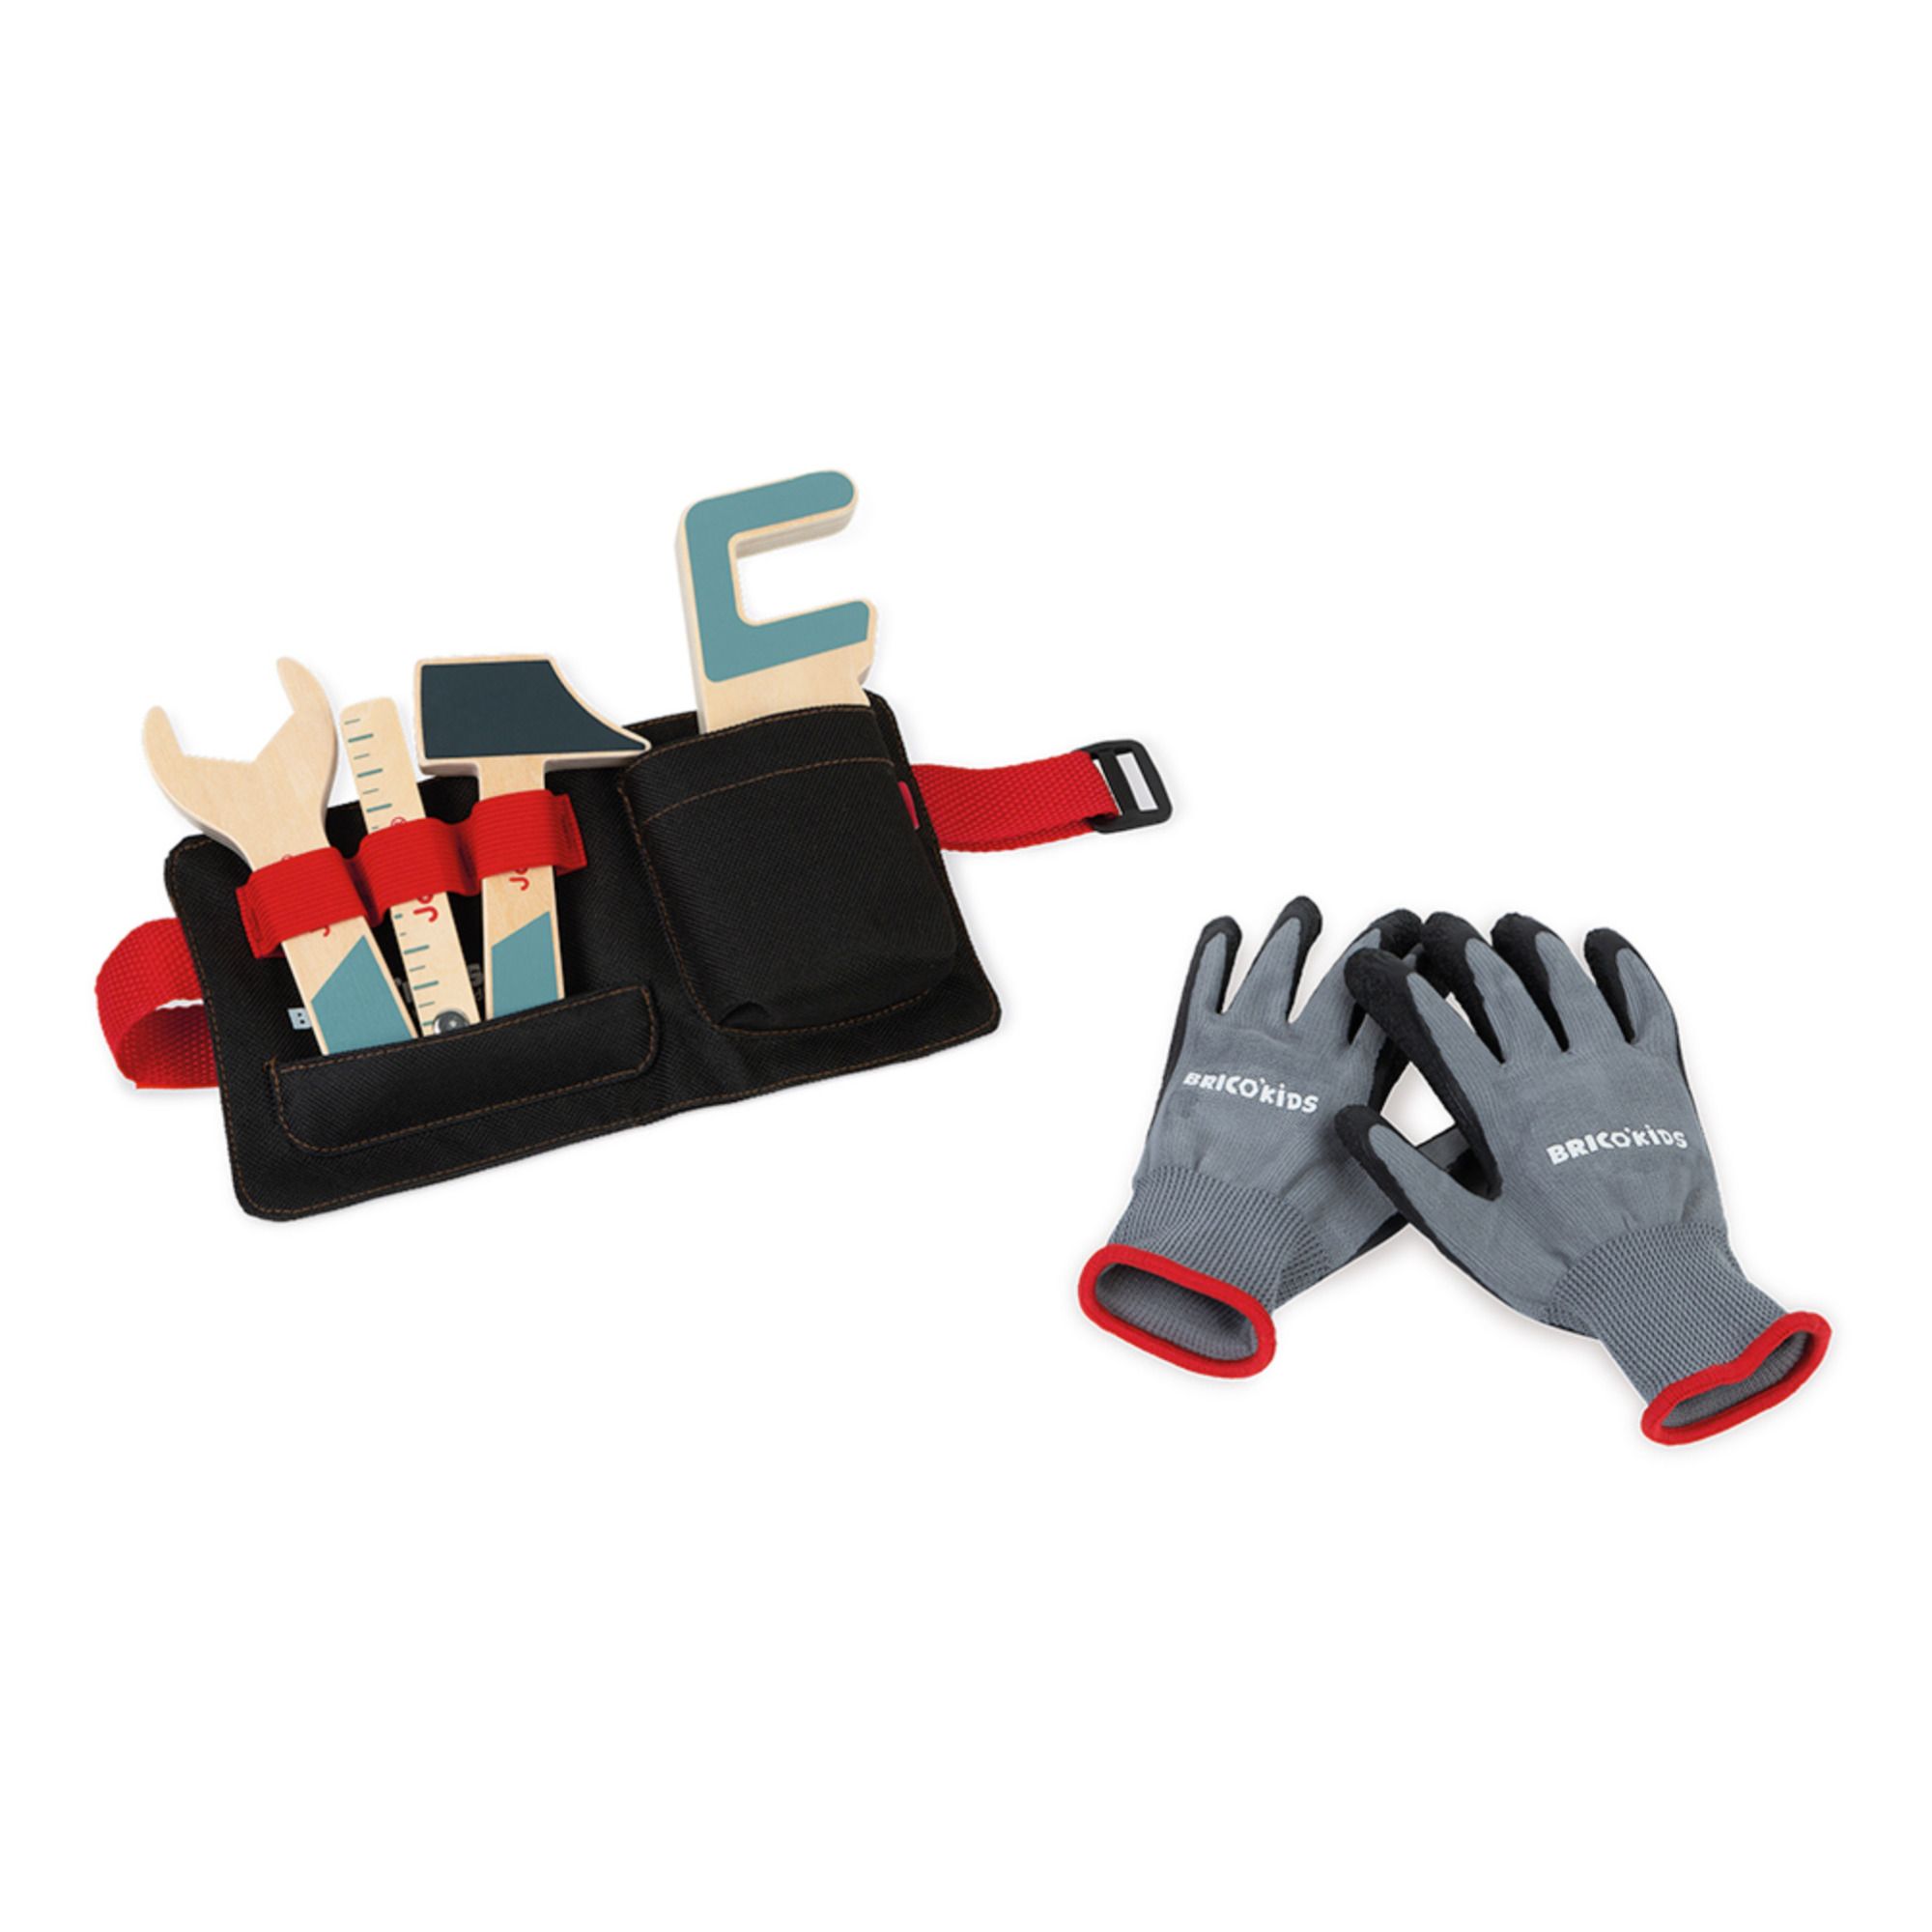 Brico‘kids Werkzeuggürtel und Handschuhe- Produktbild Nr. 1